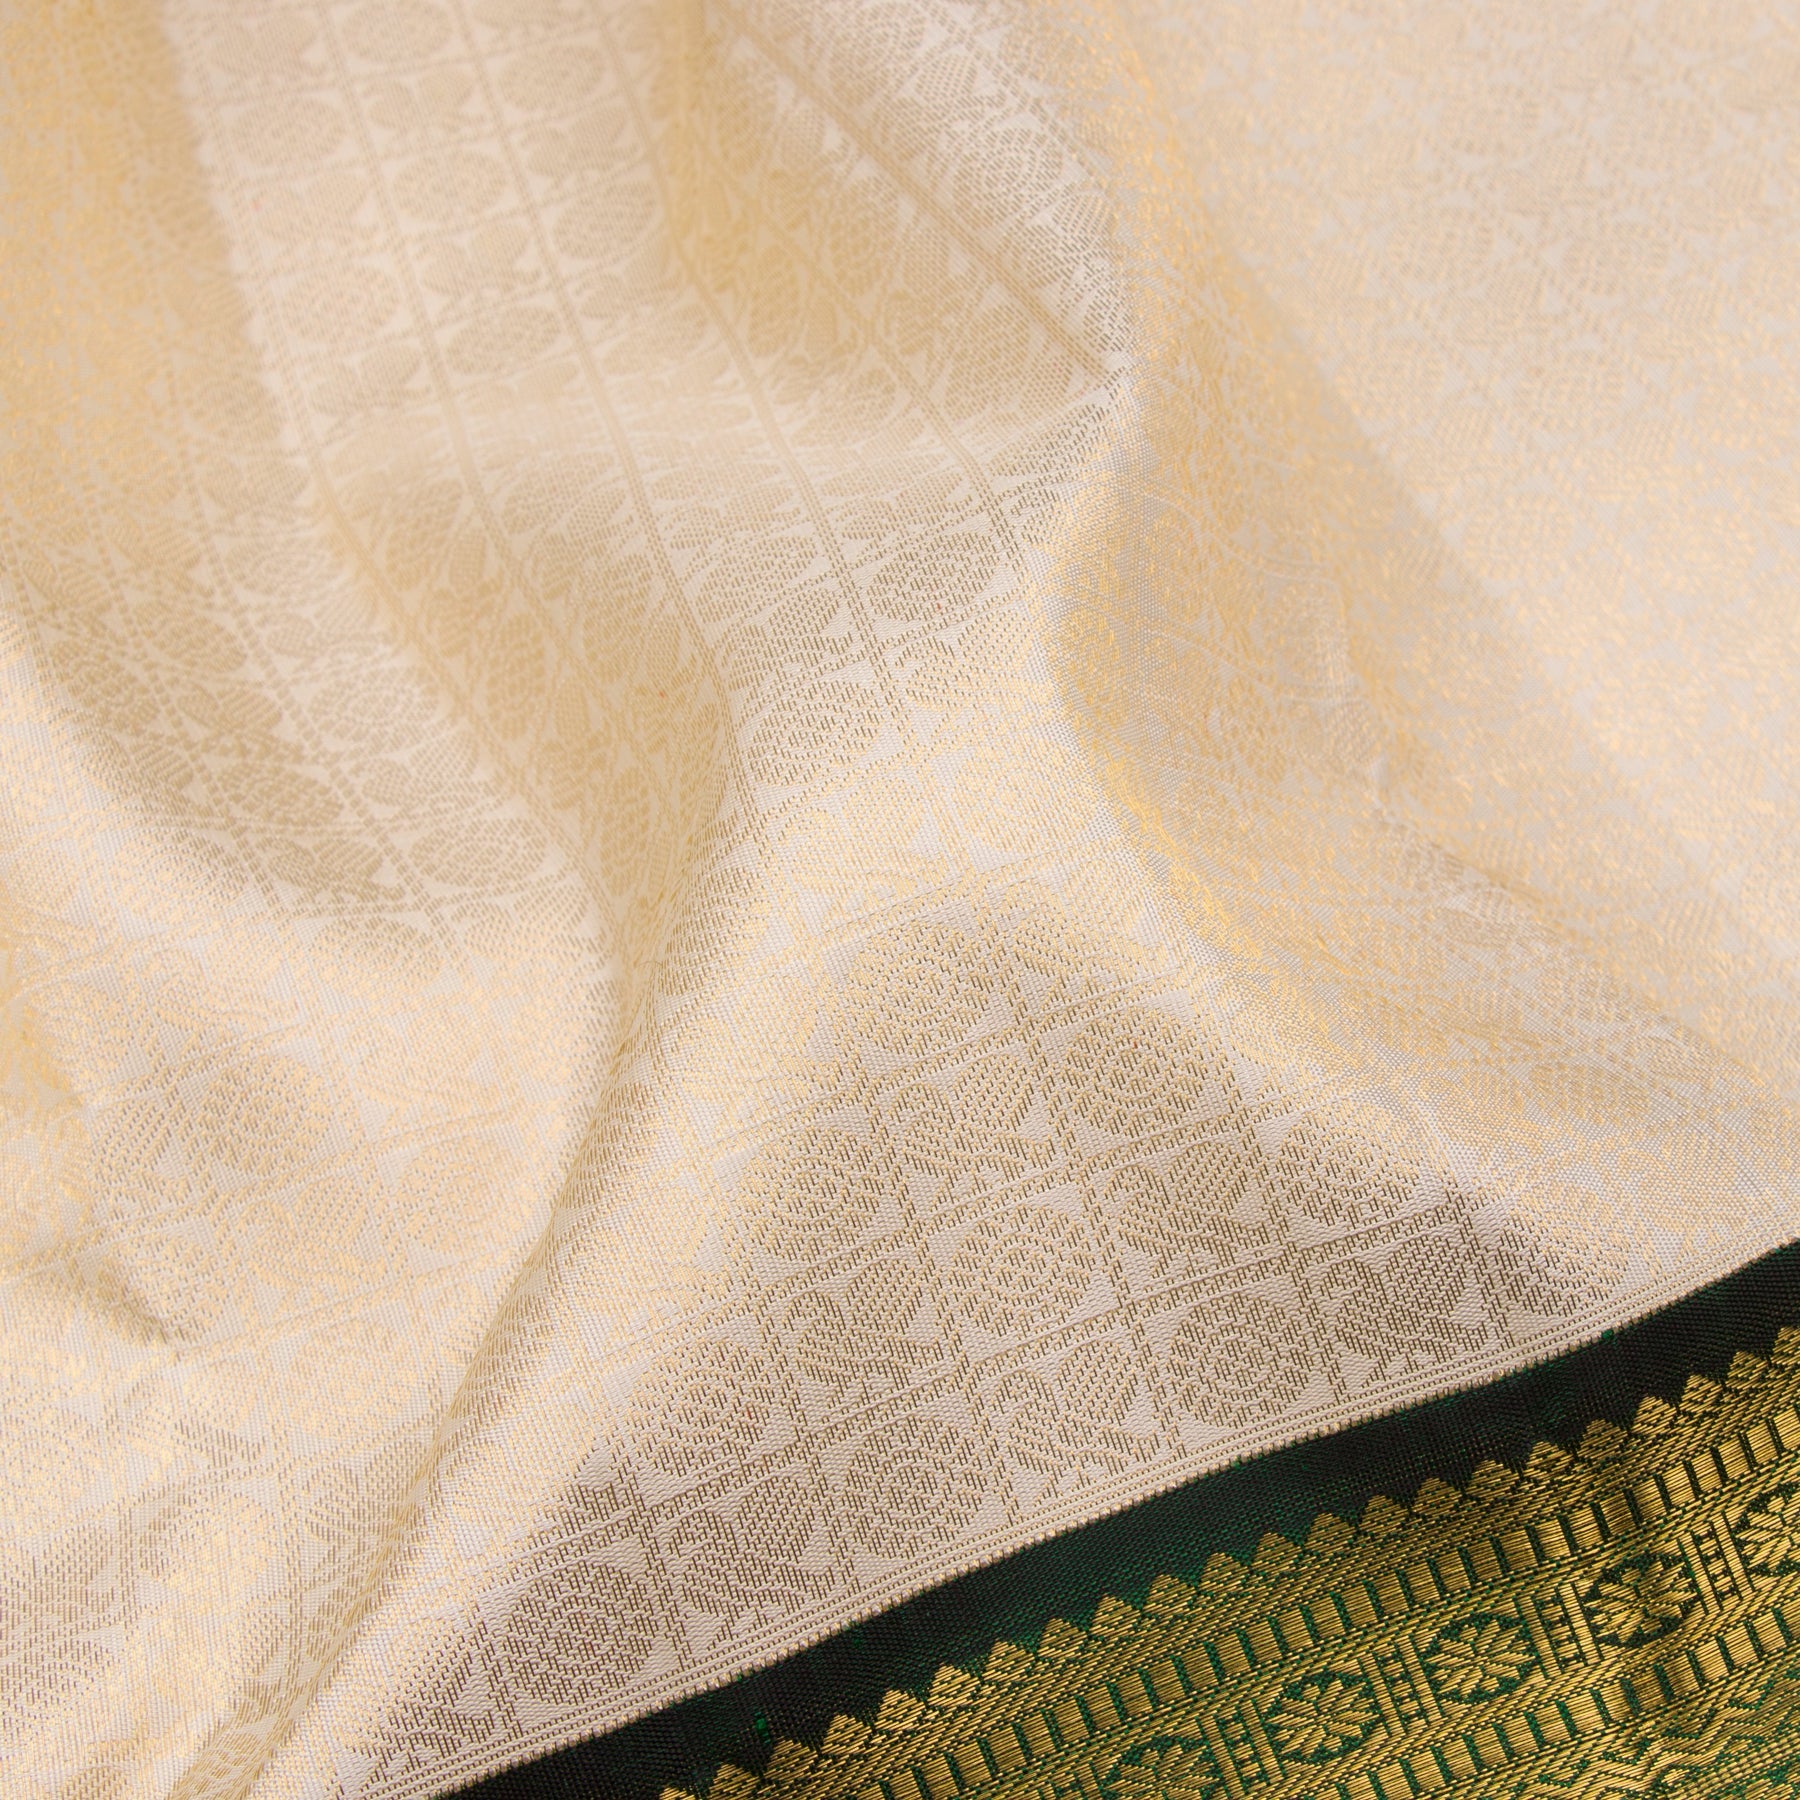 Kanakavalli Kanjivaram Silk Sari 23-110-HS001-03798 - Fabric View